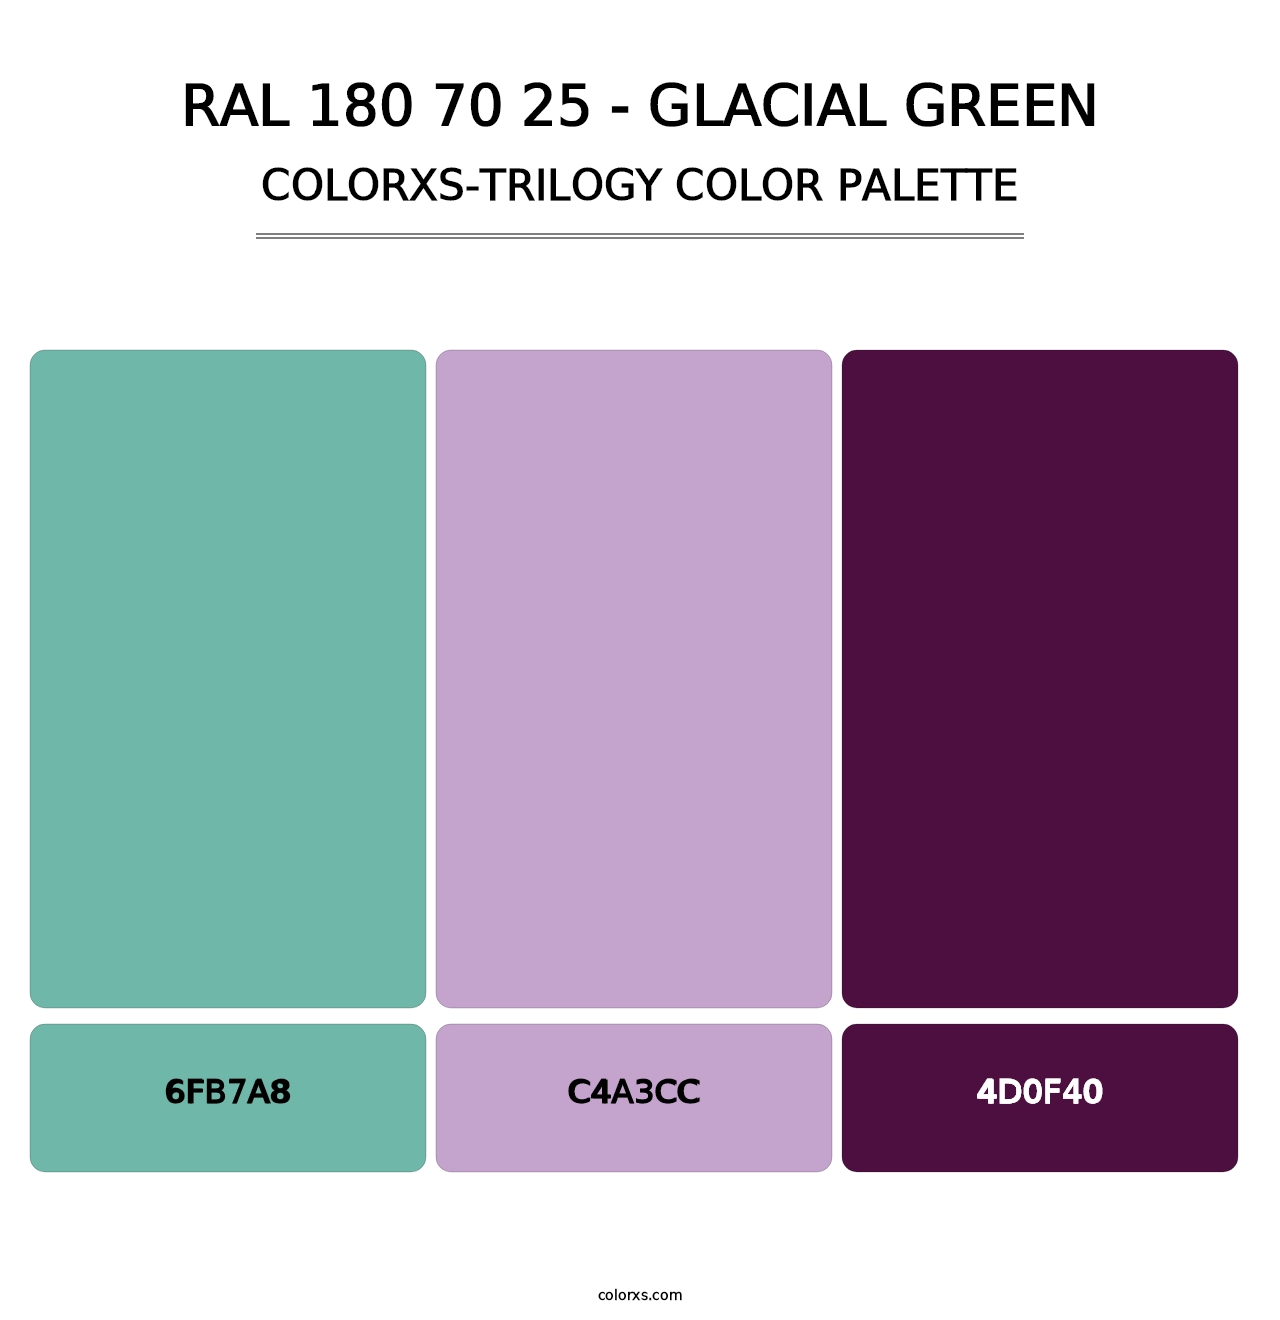 RAL 180 70 25 - Glacial Green - Colorxs Trilogy Palette